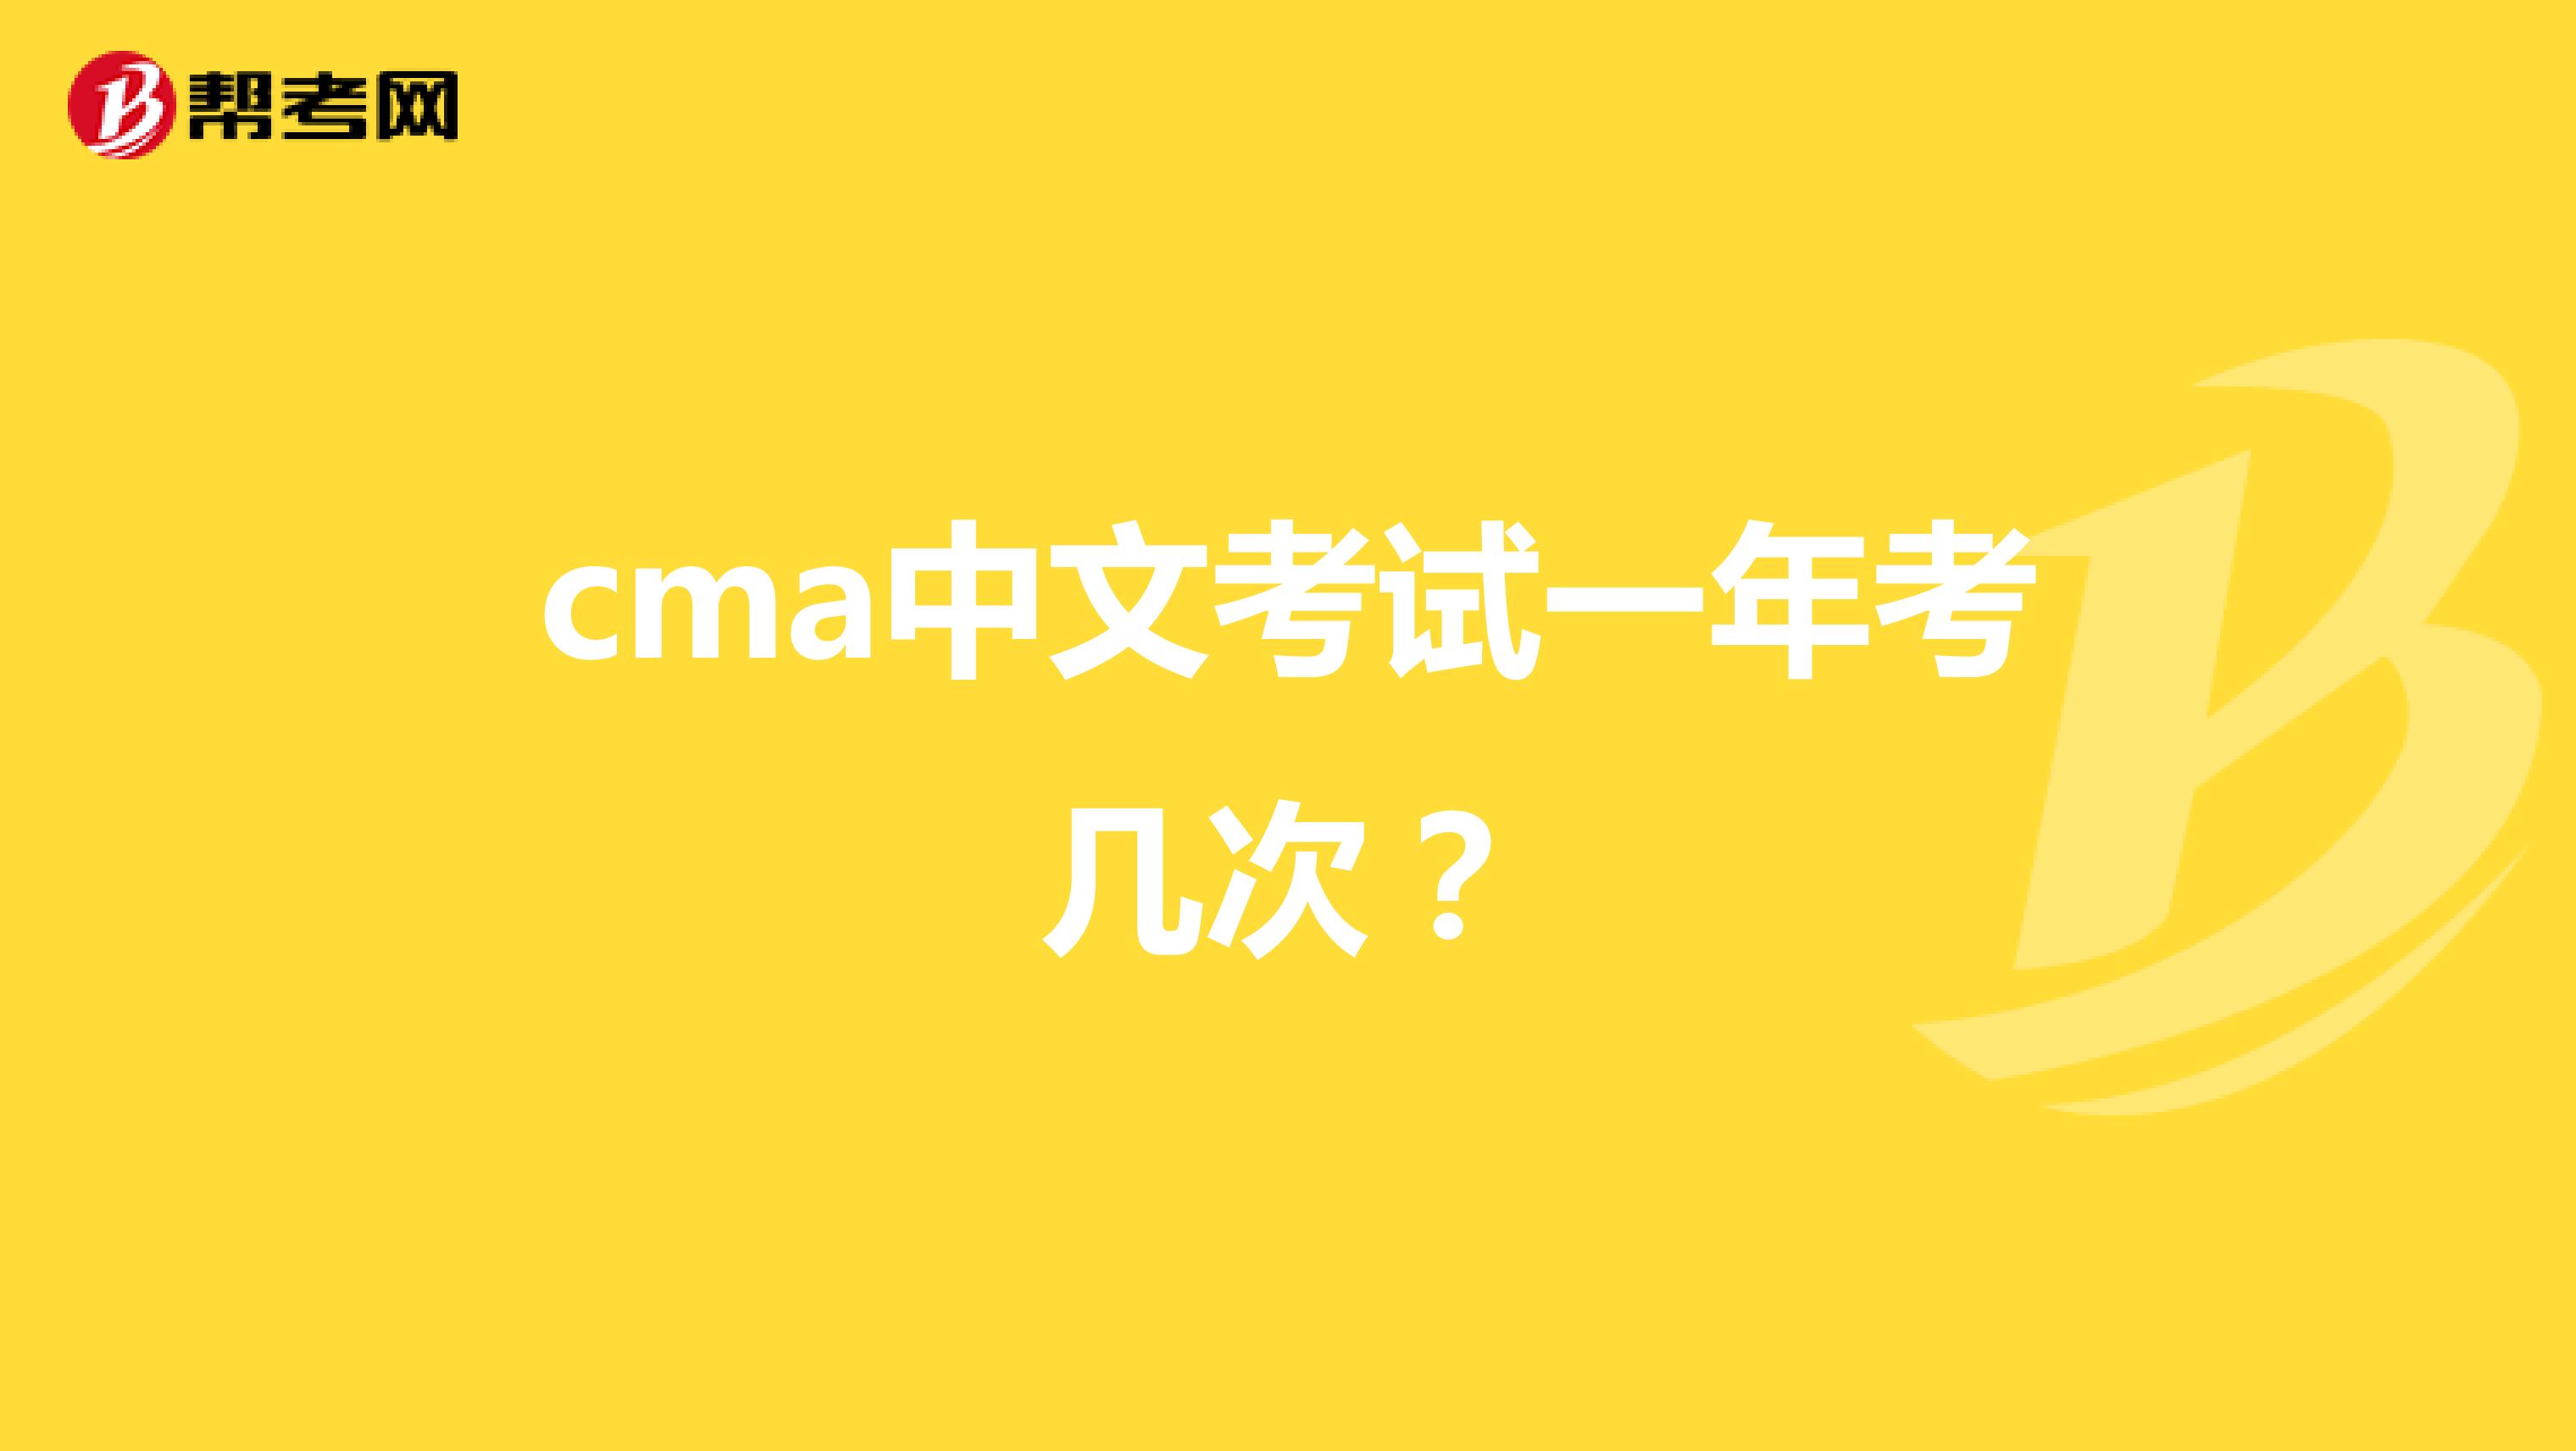 cma中文考试一年考几次？